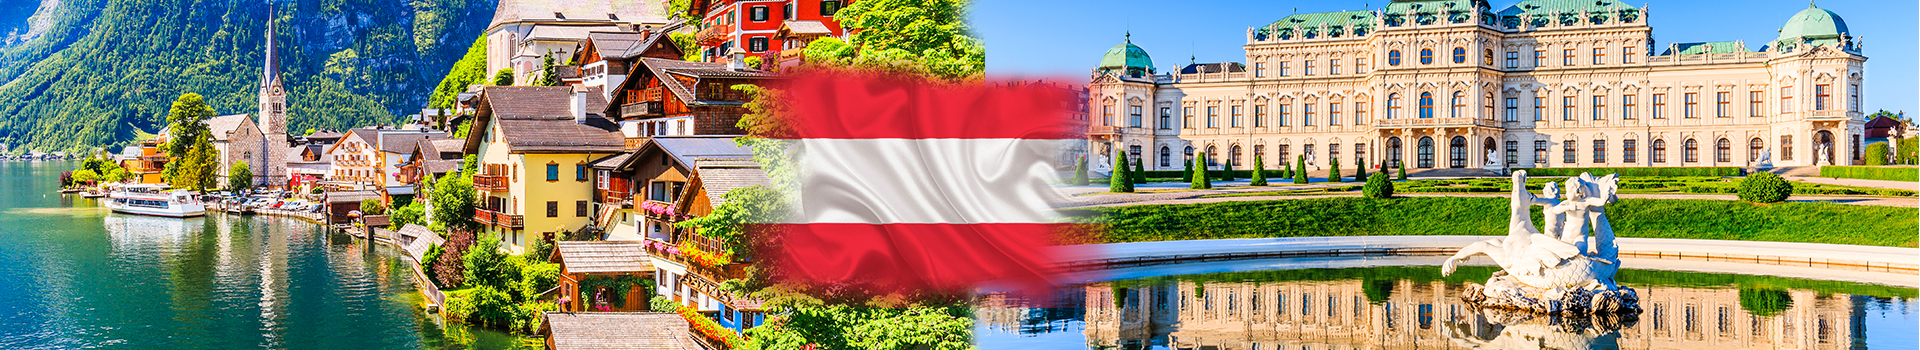 Avusturya vize başvurusu 2021